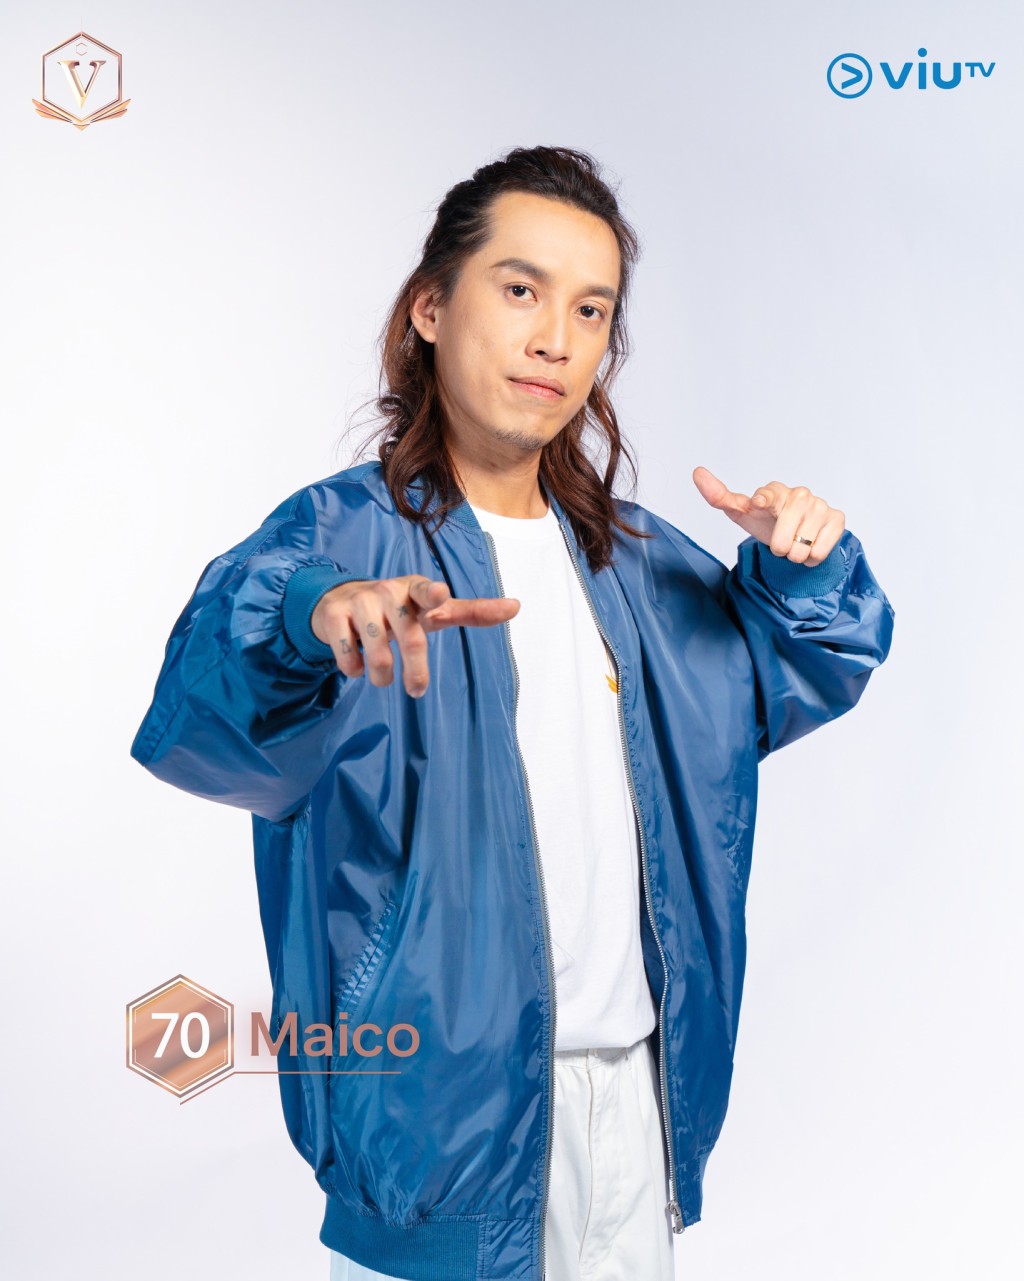 鄭仲豪（Maico） 年齡： 33 職業： 團隊主唱兼節奏結他手 擅長： 搖滾樂 IG：maico_teh #吉隆坡參賽者